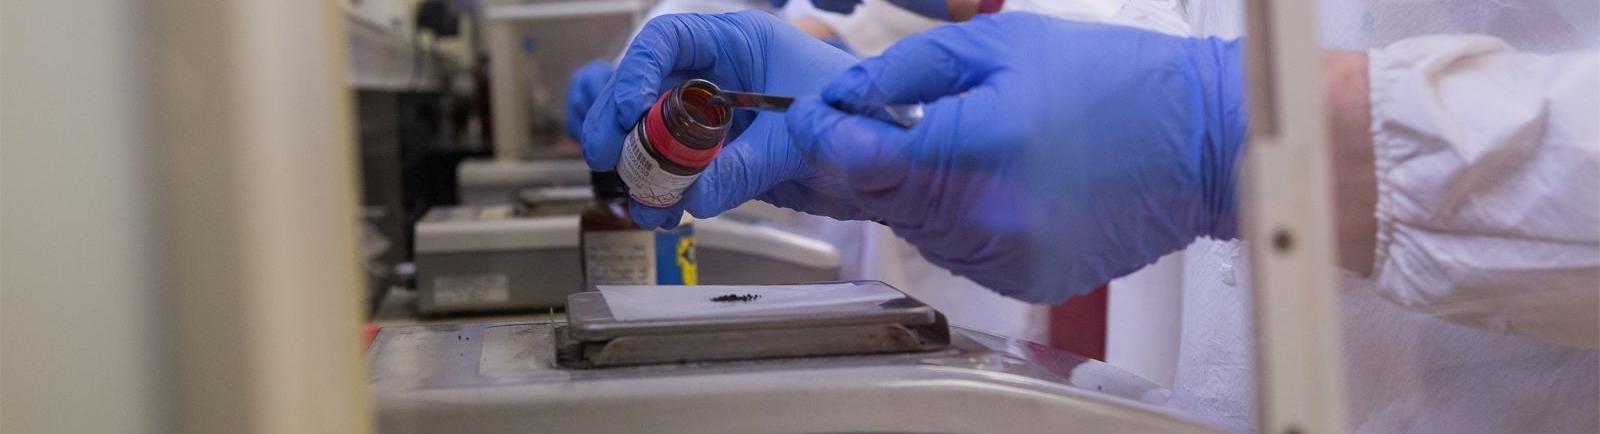 威尼斯赌场网站化学系的学生在实验室里戴着手套从罐子里取出材料.